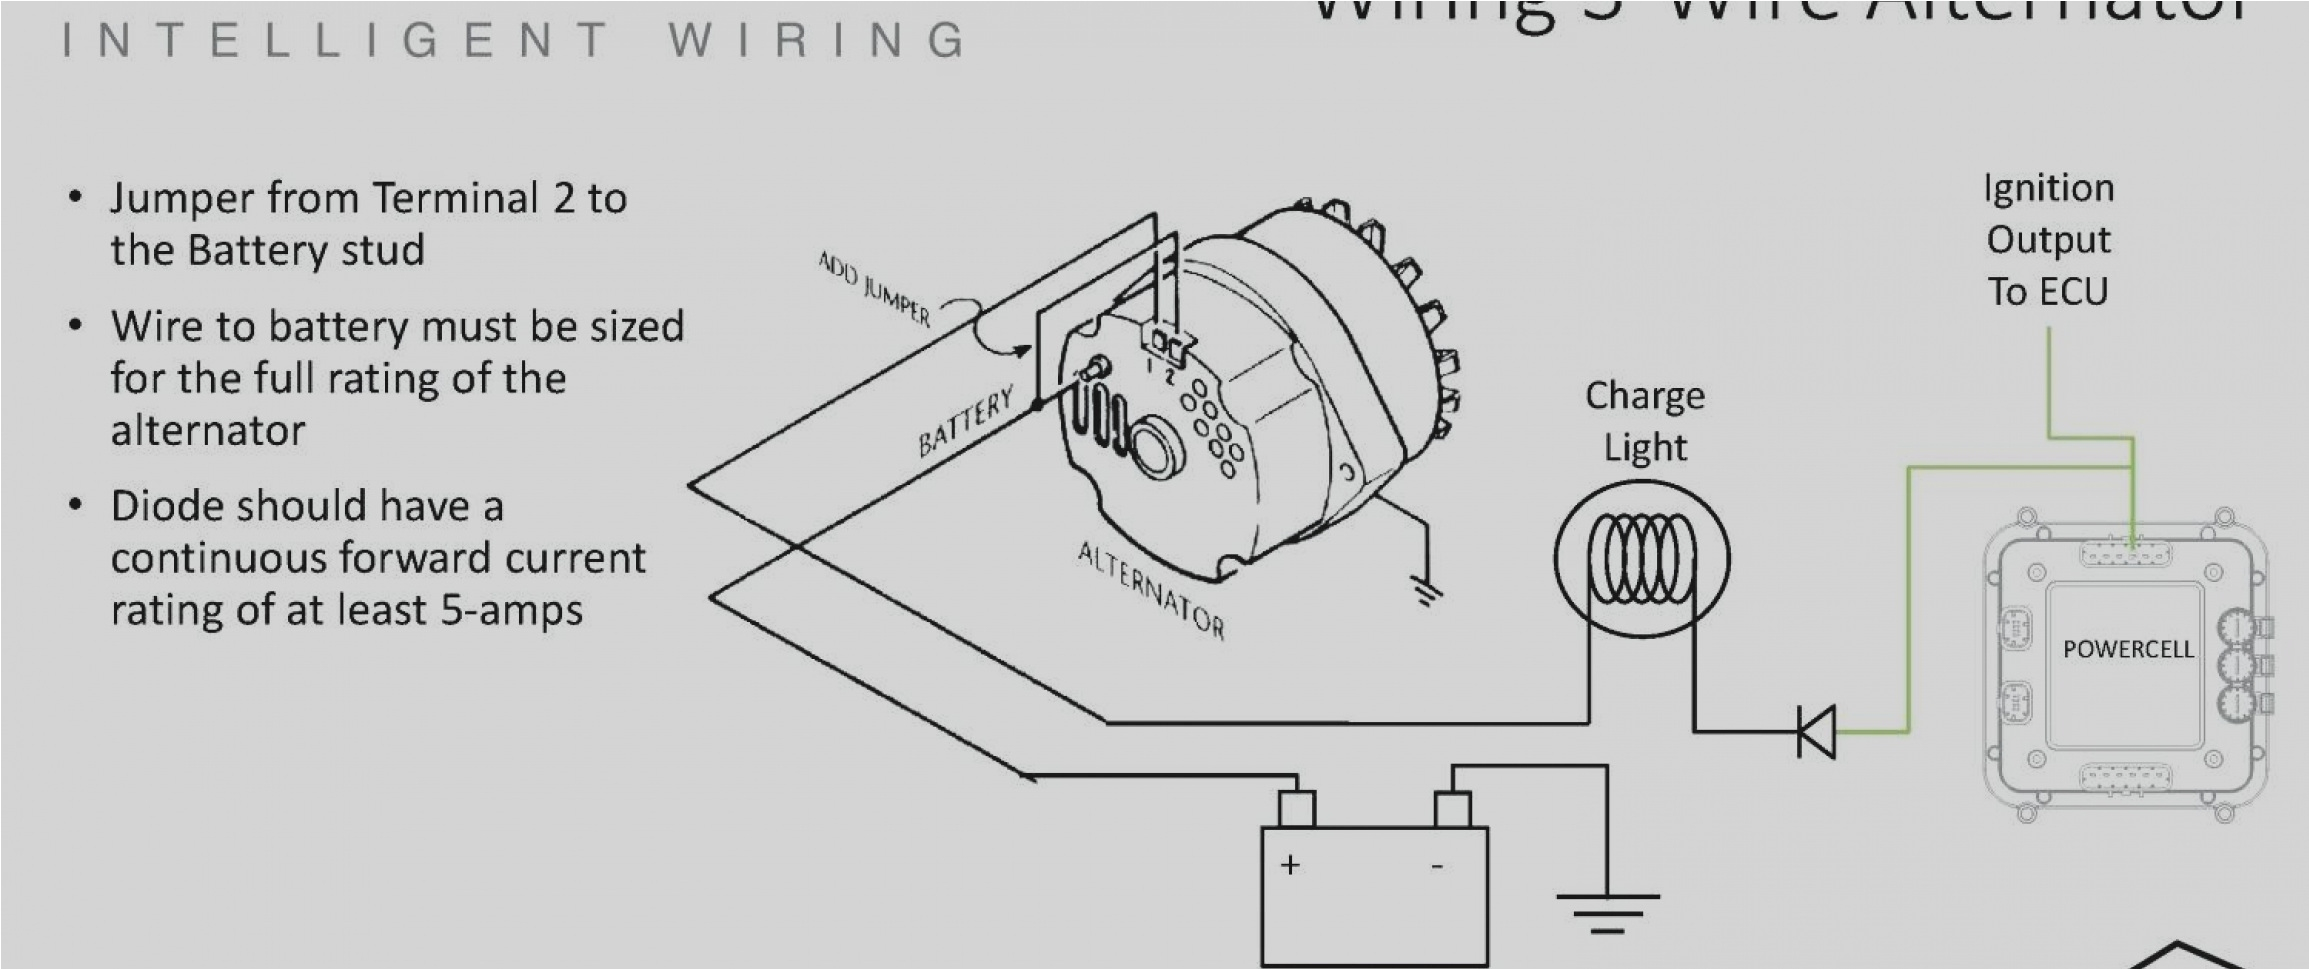 3 wire alternator wiring diagram fresh gm alt wiring diagram wire data schema